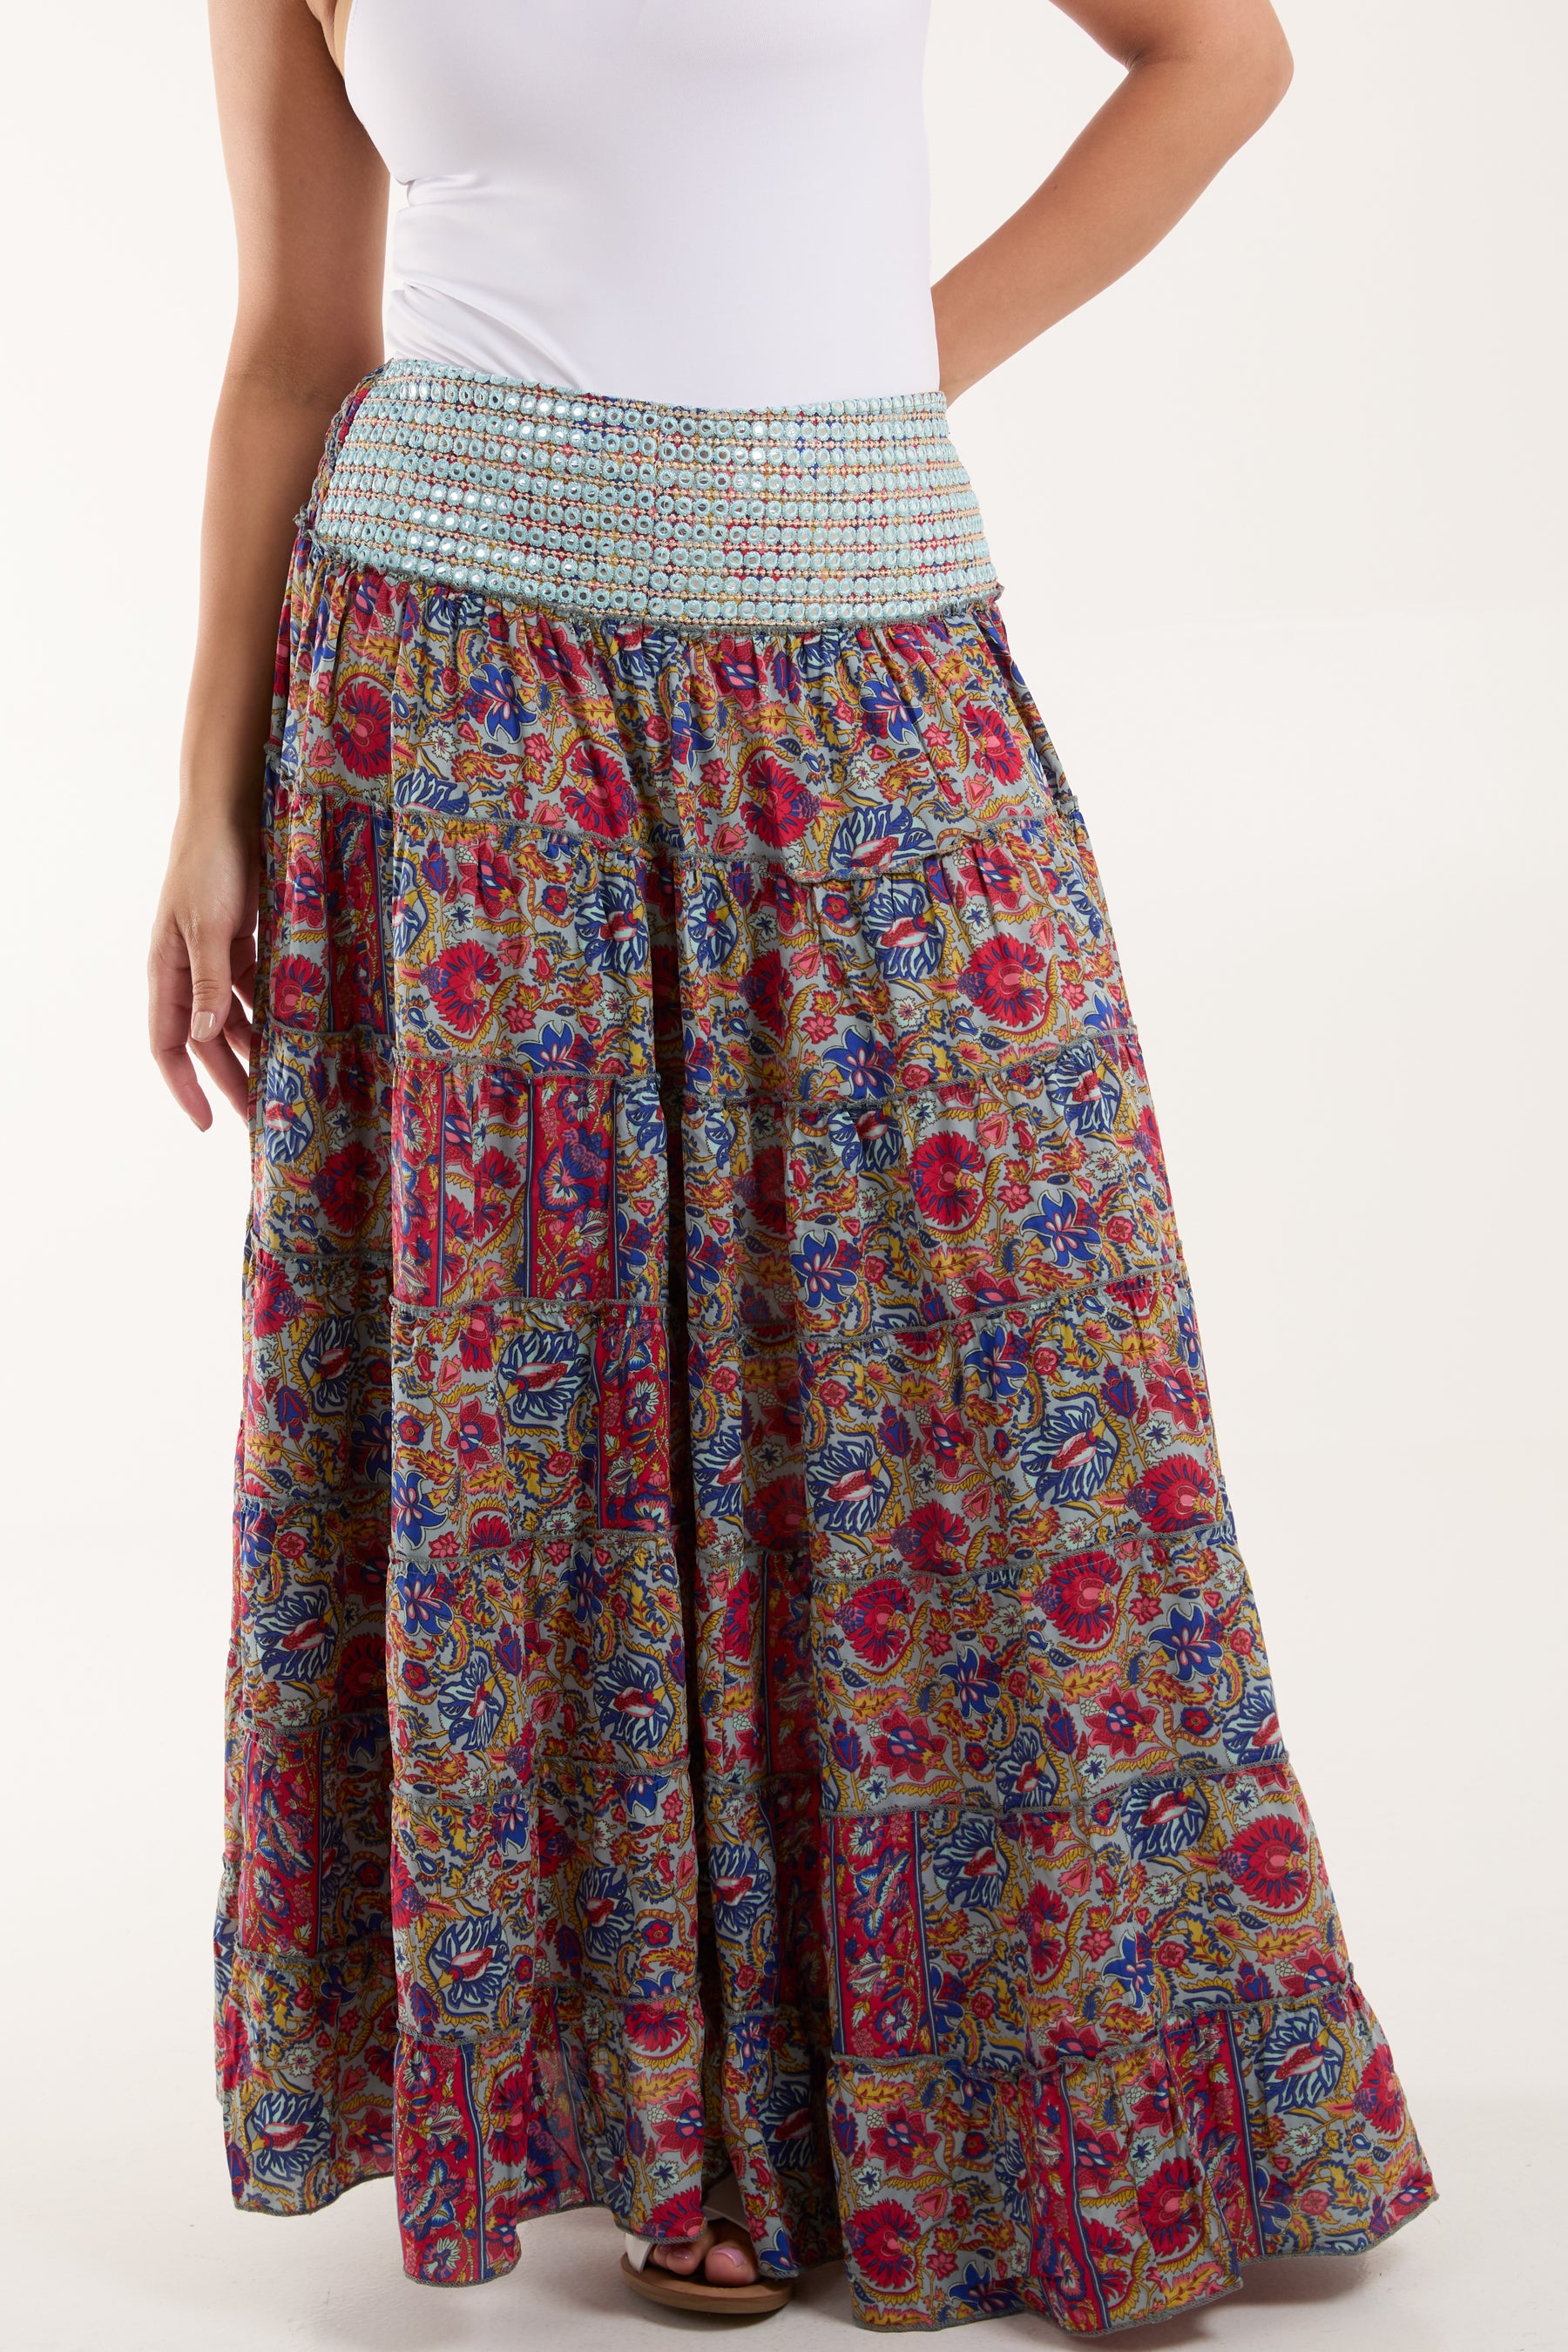 Mirror Embellished Waist Tiered Skirt